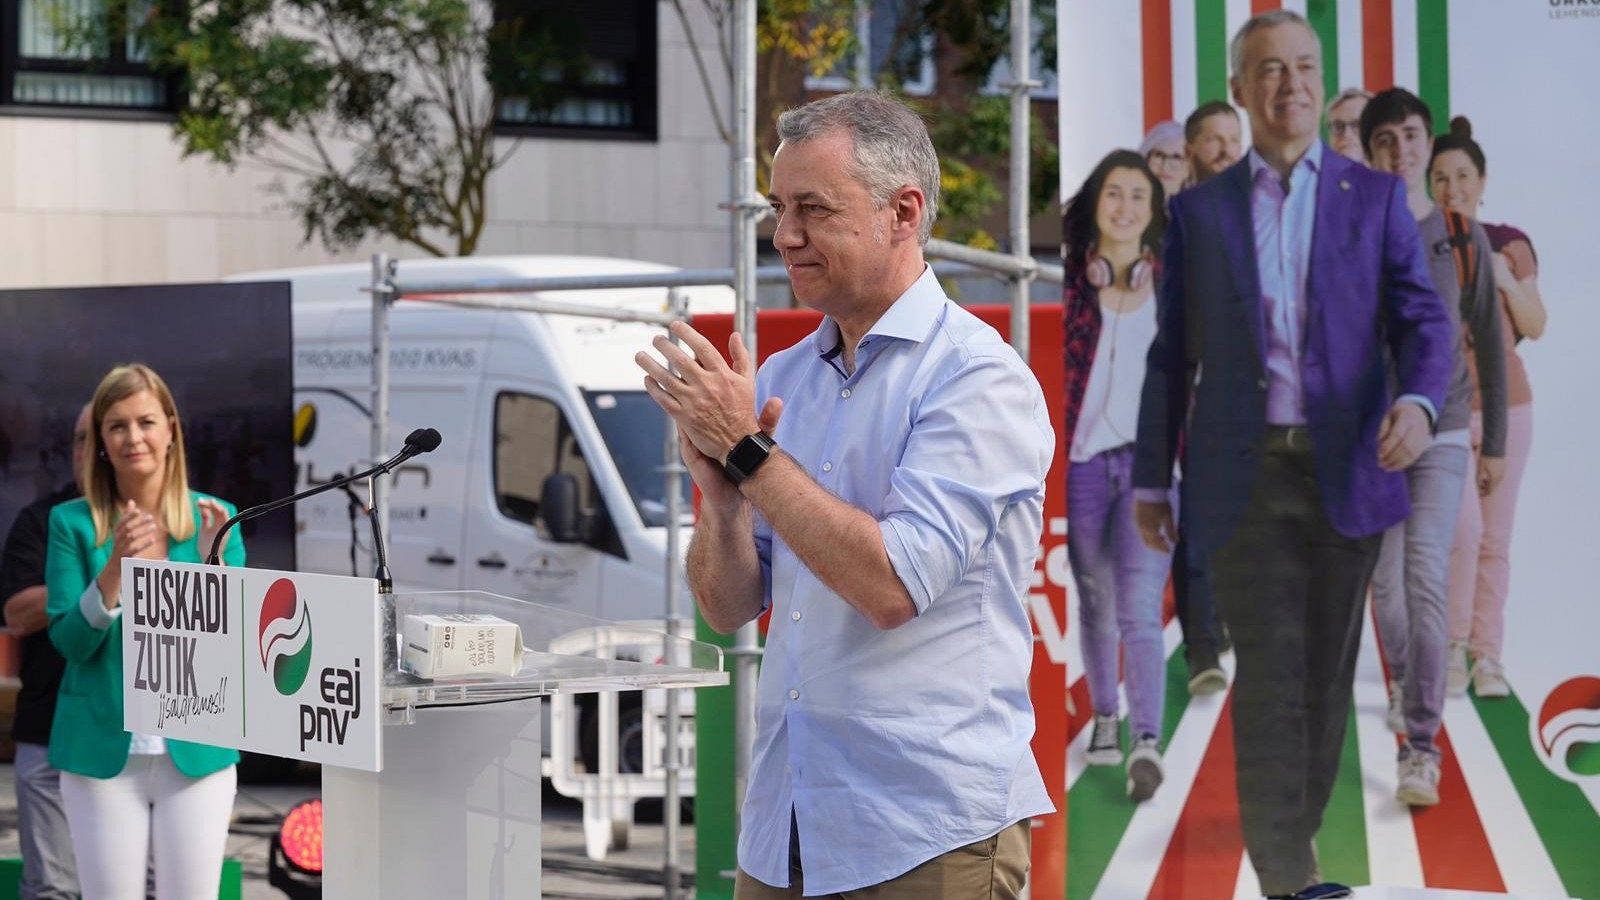 Urkullu centra su discurso en la recuperación del País Vasco y EH-Bildu le pide no tener "equidistancia" frente al "fascismo"